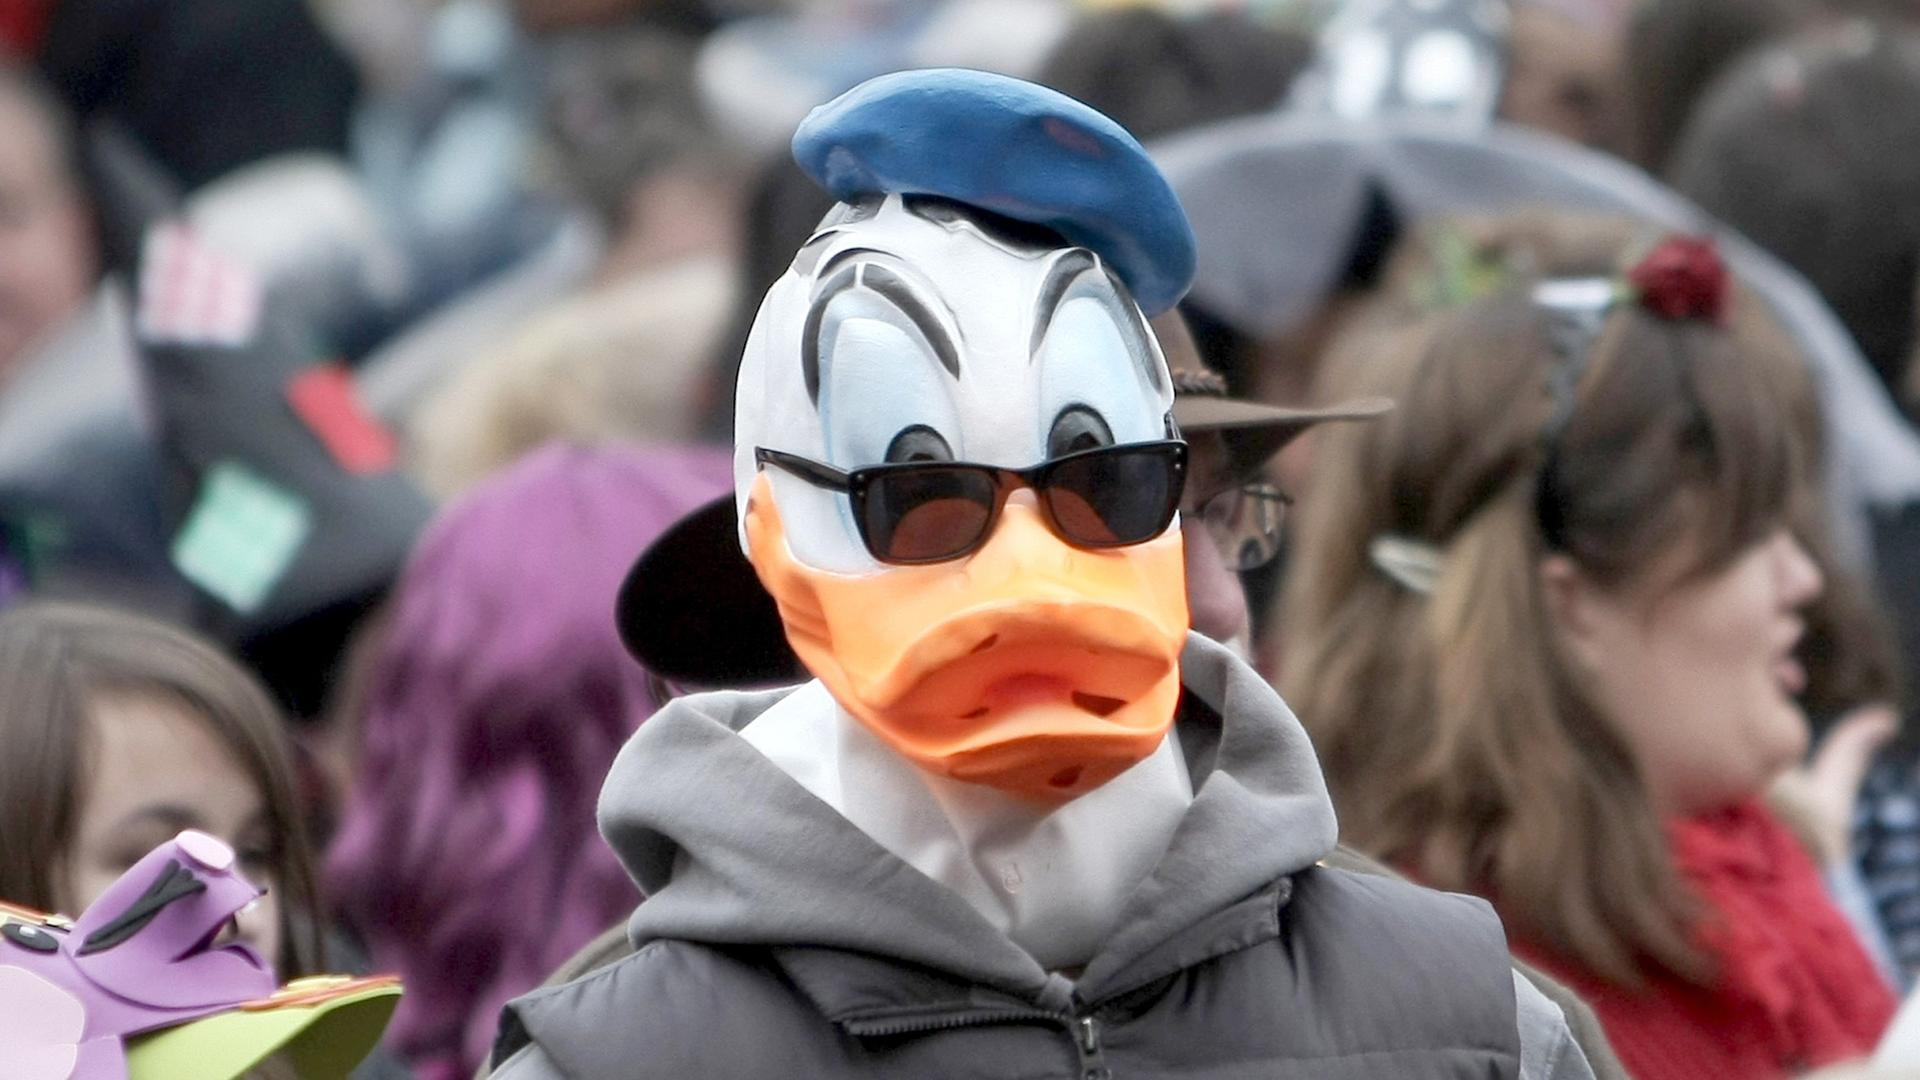 Ein als "Donald Duck" verkleideter Mann beim Fastnachtsstart in Mainz